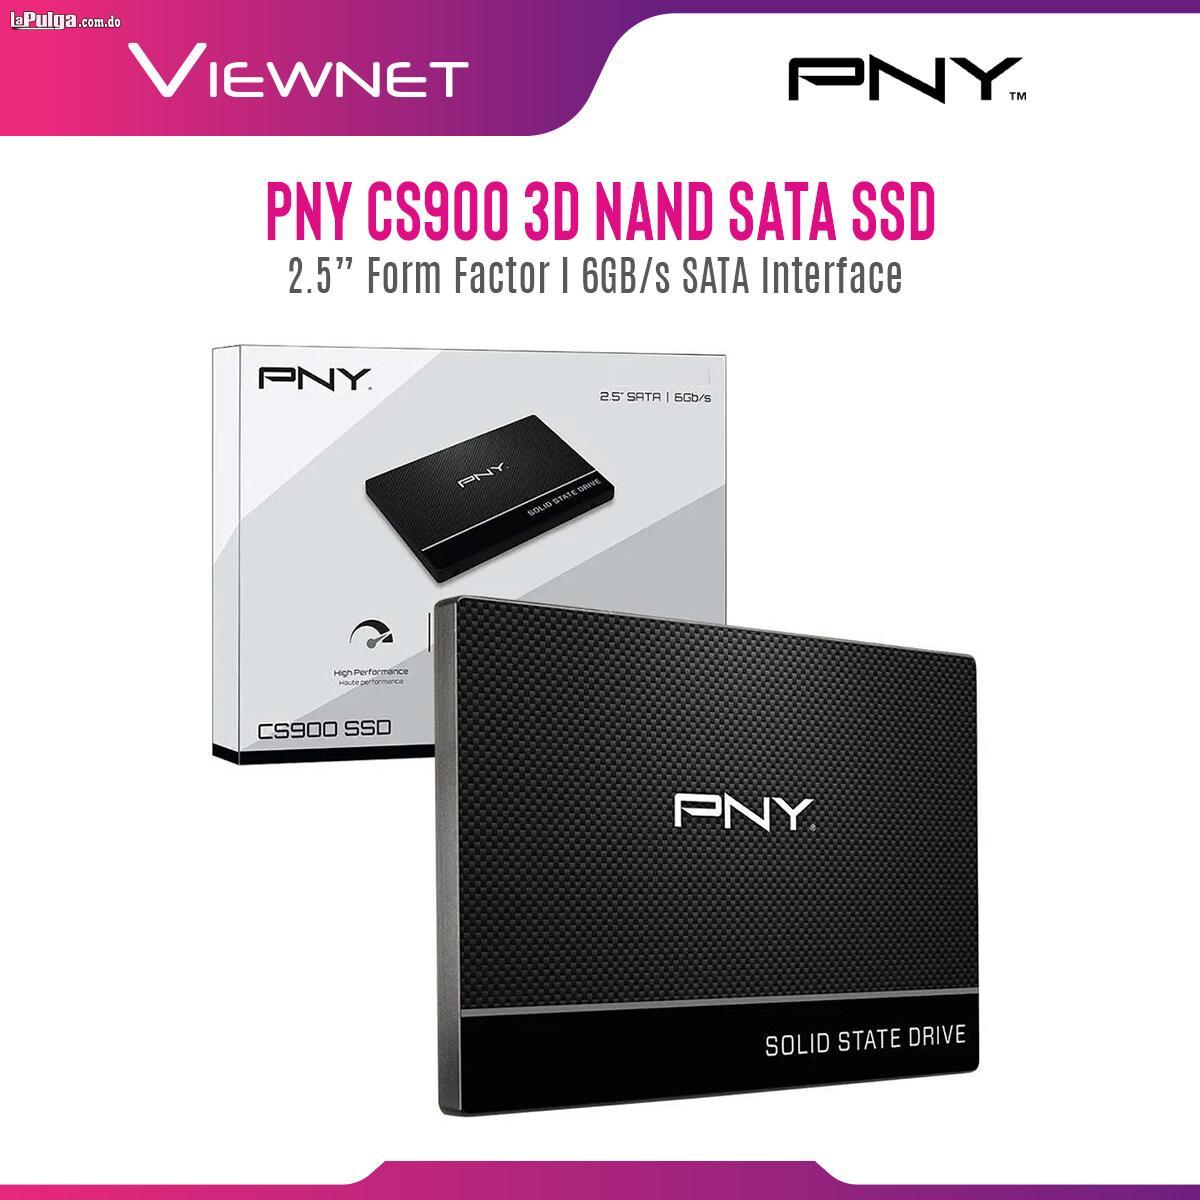 pny cs900 ssd estado solido 3d nand 2.5- nuevo oferta - lapulga.com.do | La Pulga Virtual